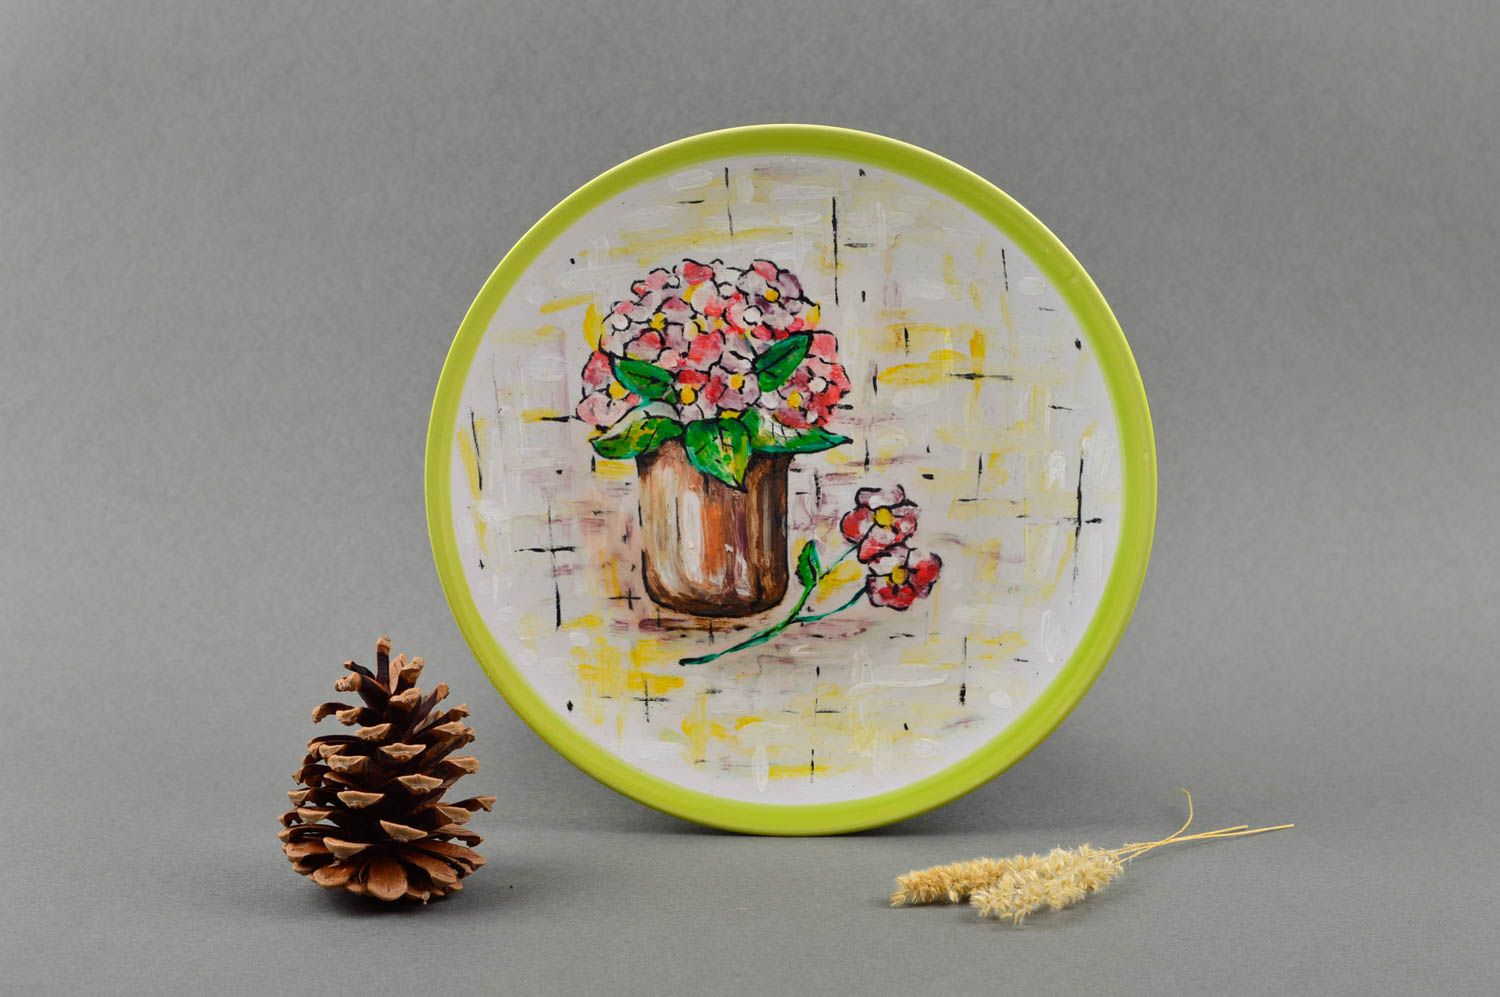 Расписная тарелка ручной работы керамическая тарелка глиняная посуда Цветы фото 1